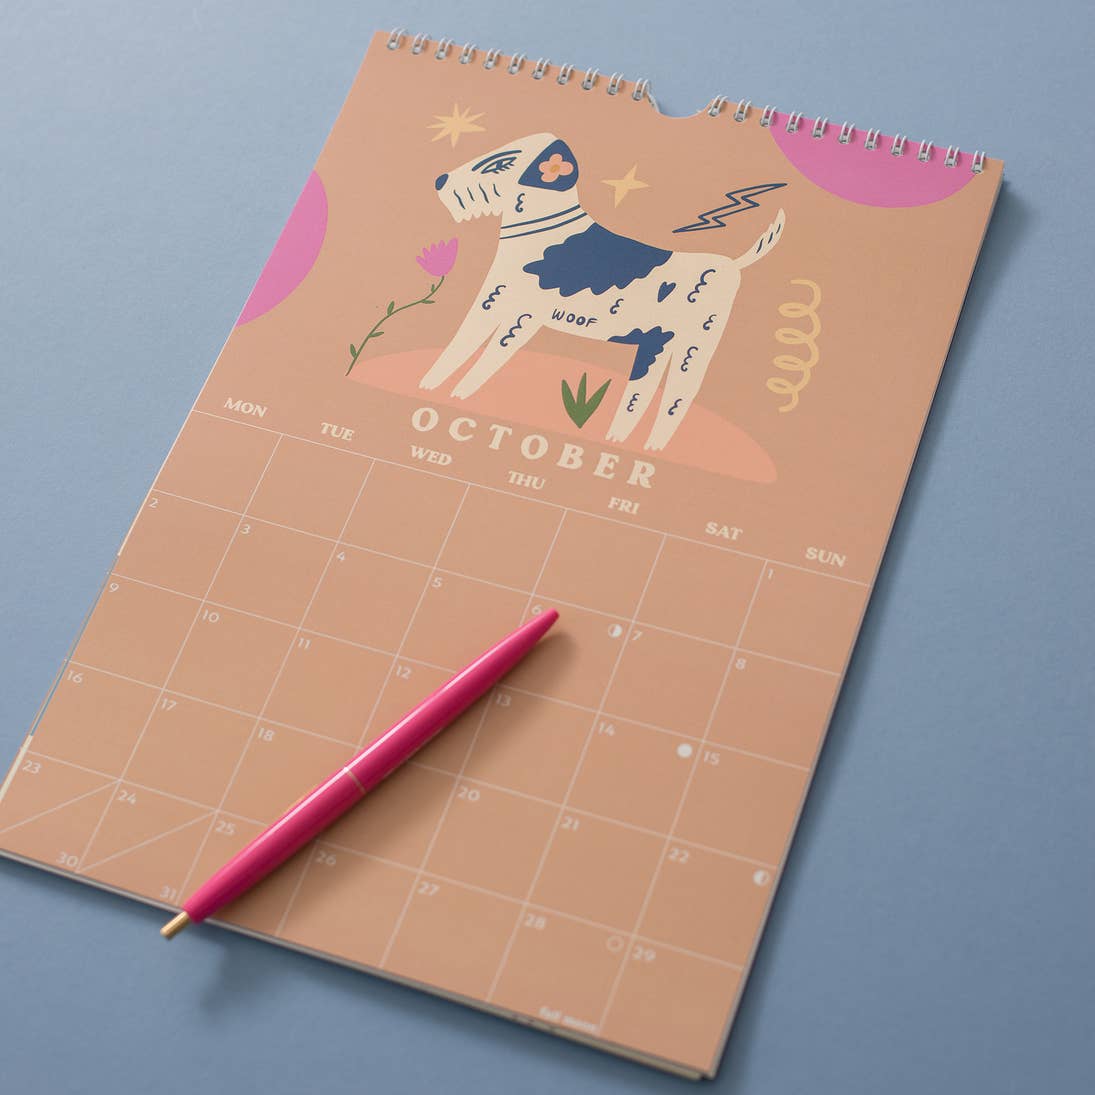 2023 Wall Calendar | Dogs & Doodles